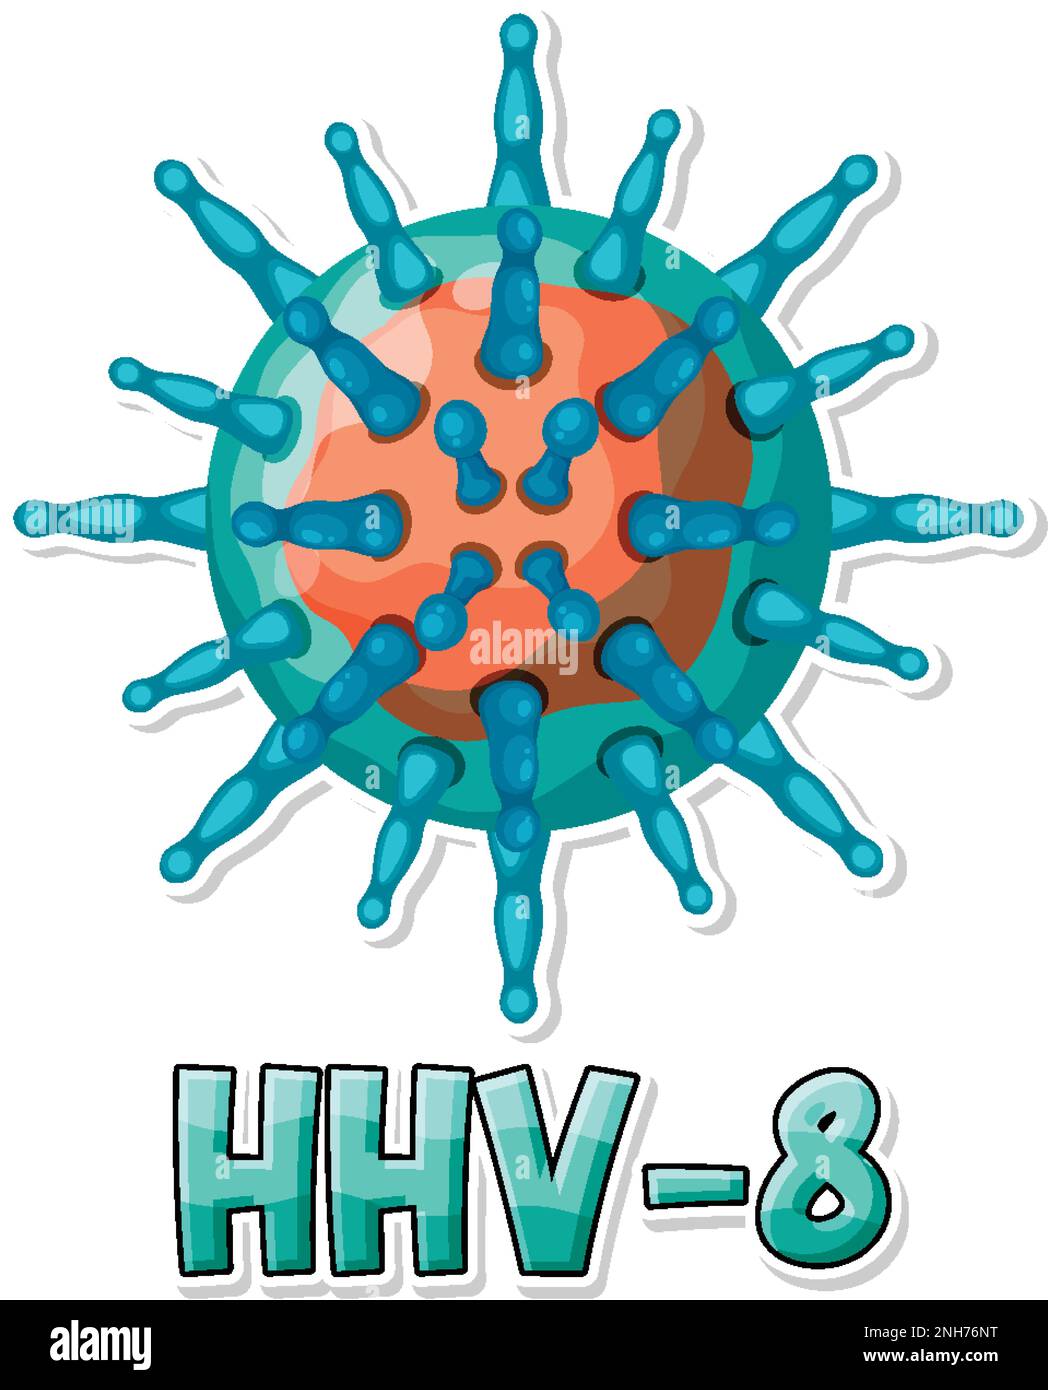 Human herpesvirus 8 (HHV 8) on white background illustration Stock Vector